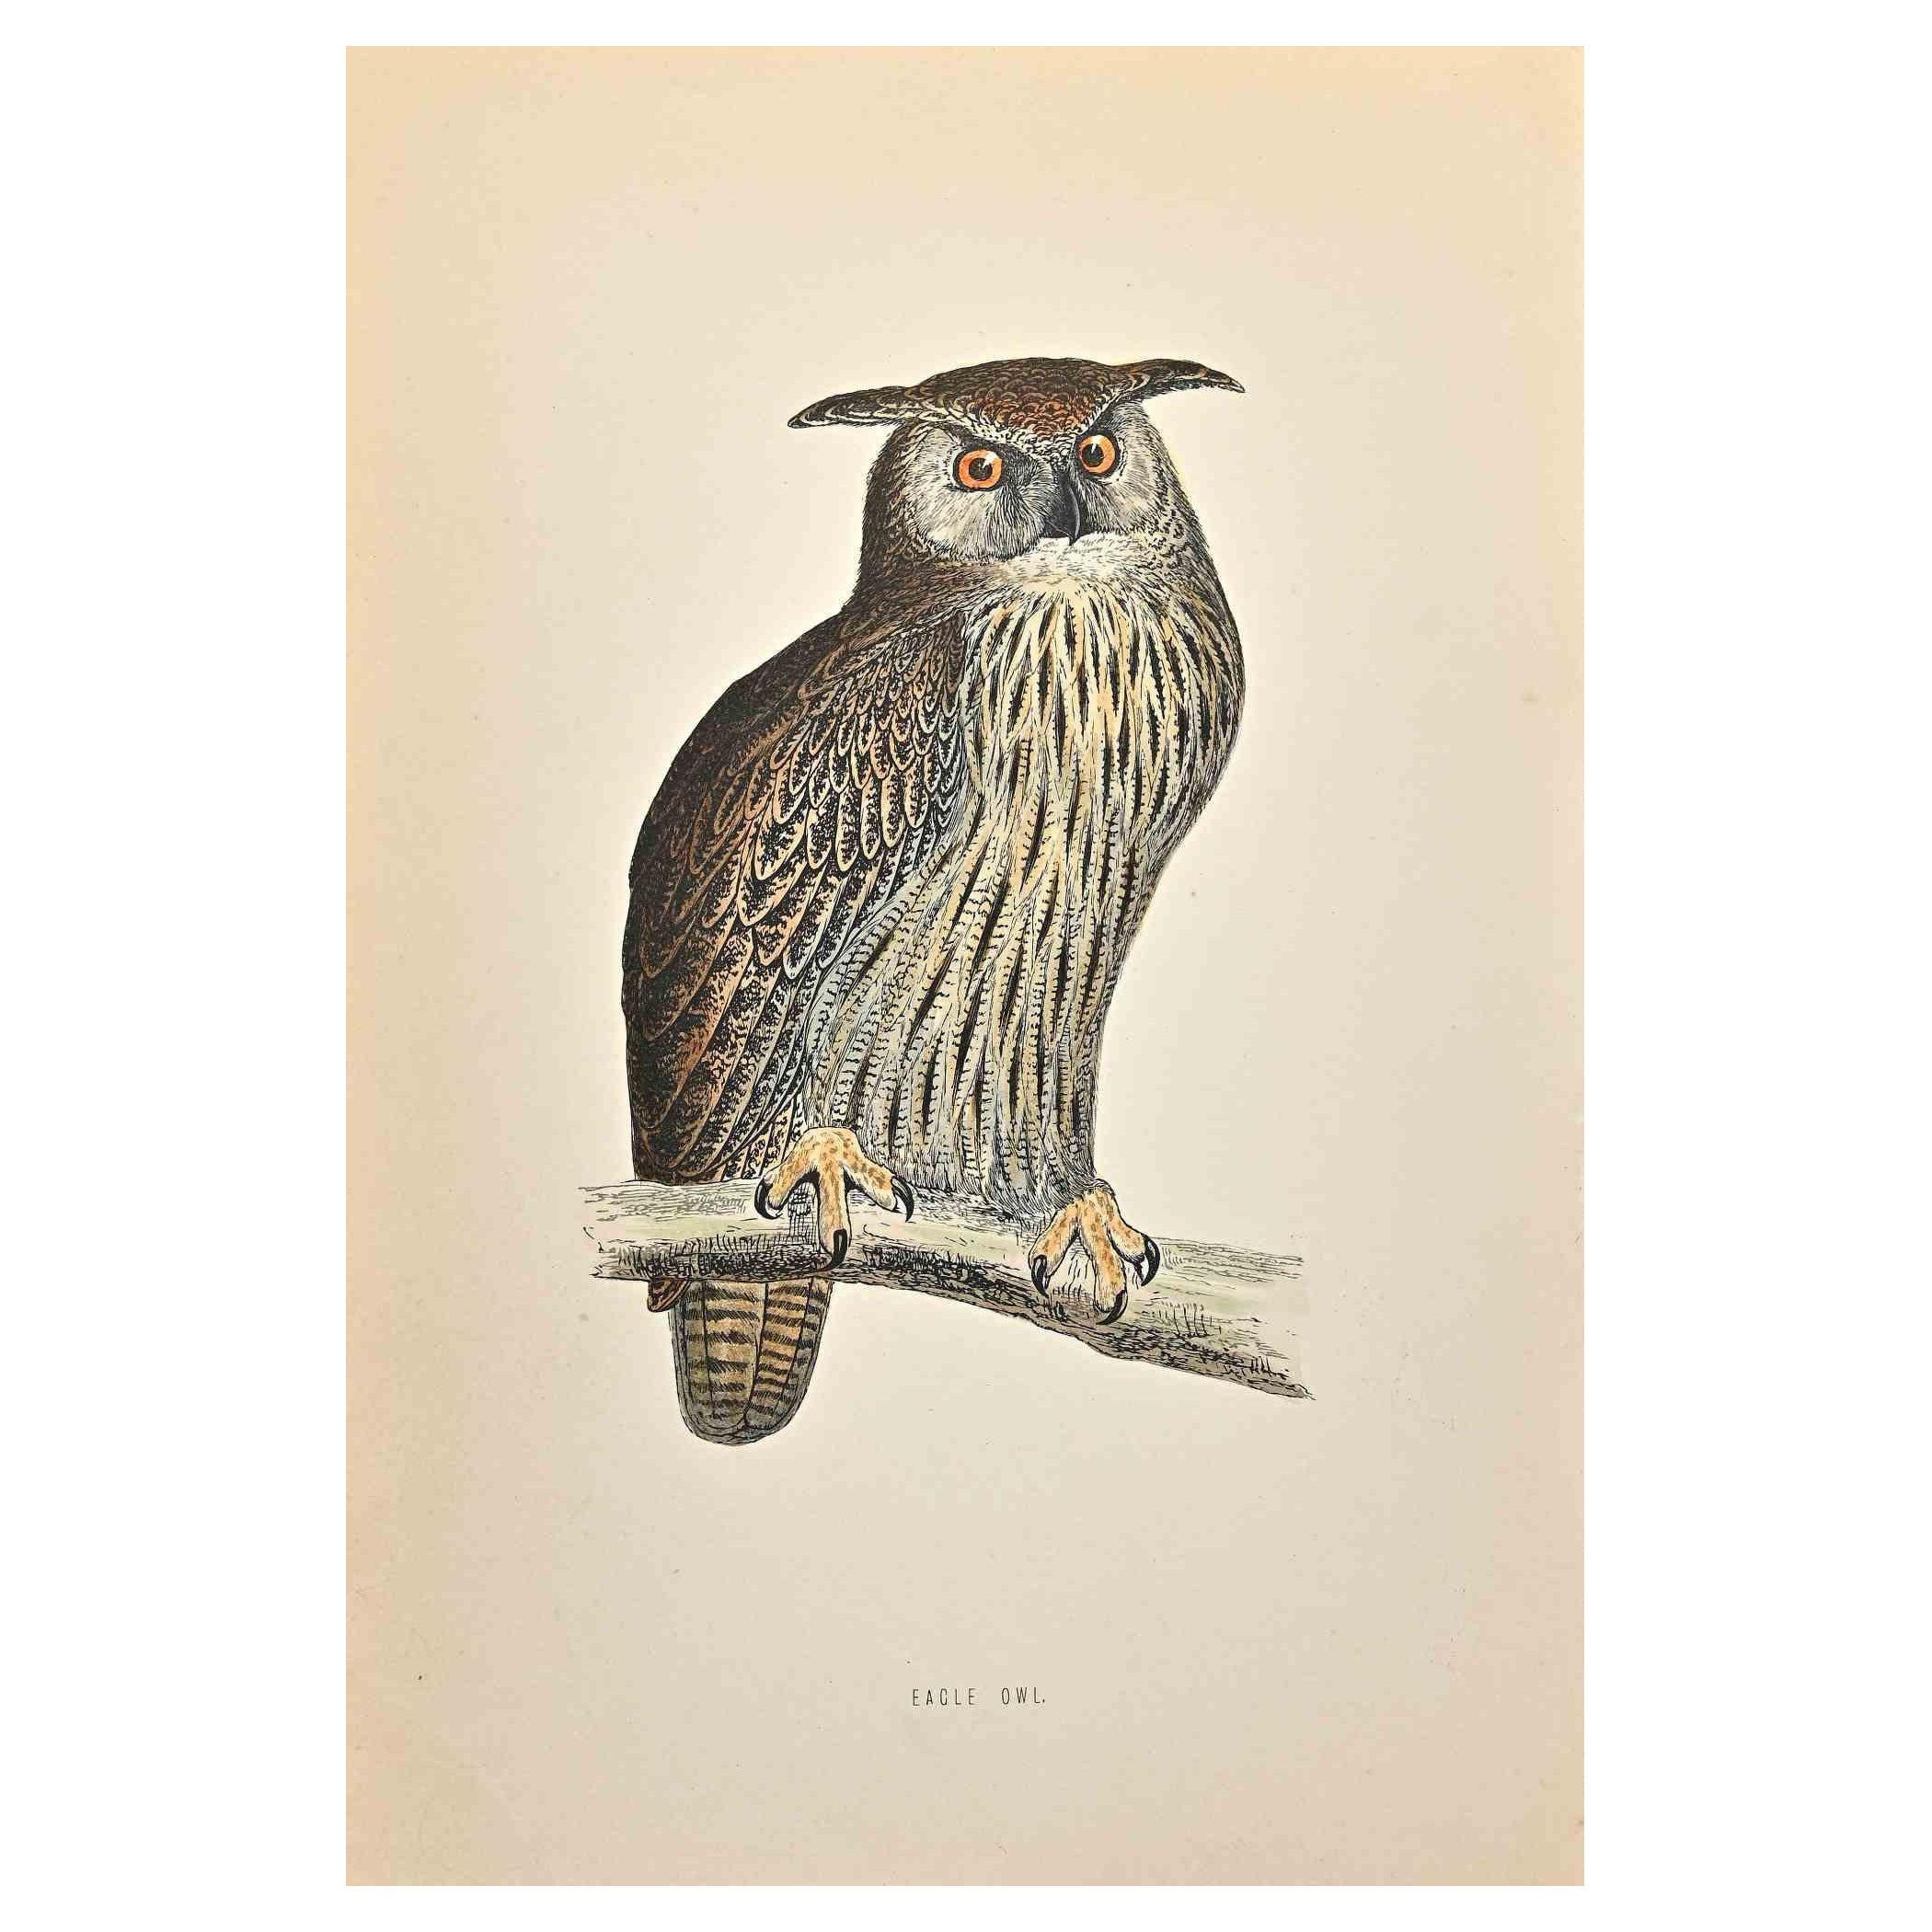 Eagle Owl - Holzschnitt Druck von Alexander Francis Lydon  - 1870